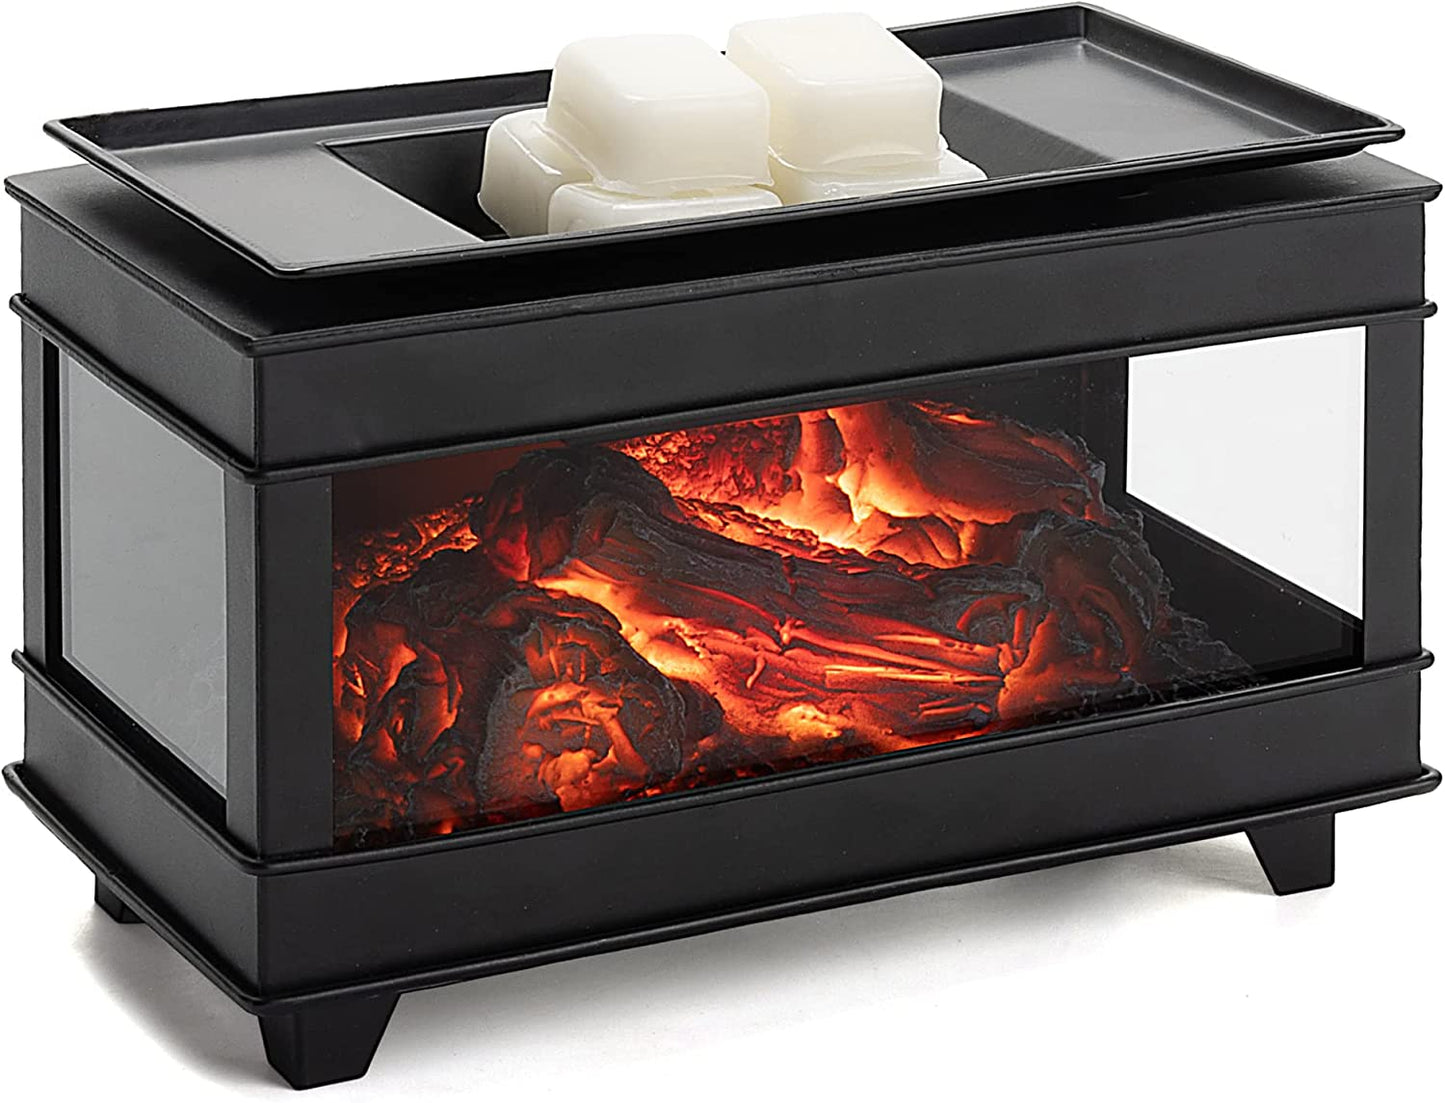 Fireplace Wax Melt Warmer Metal Wax Melter For Scented Wax Melts